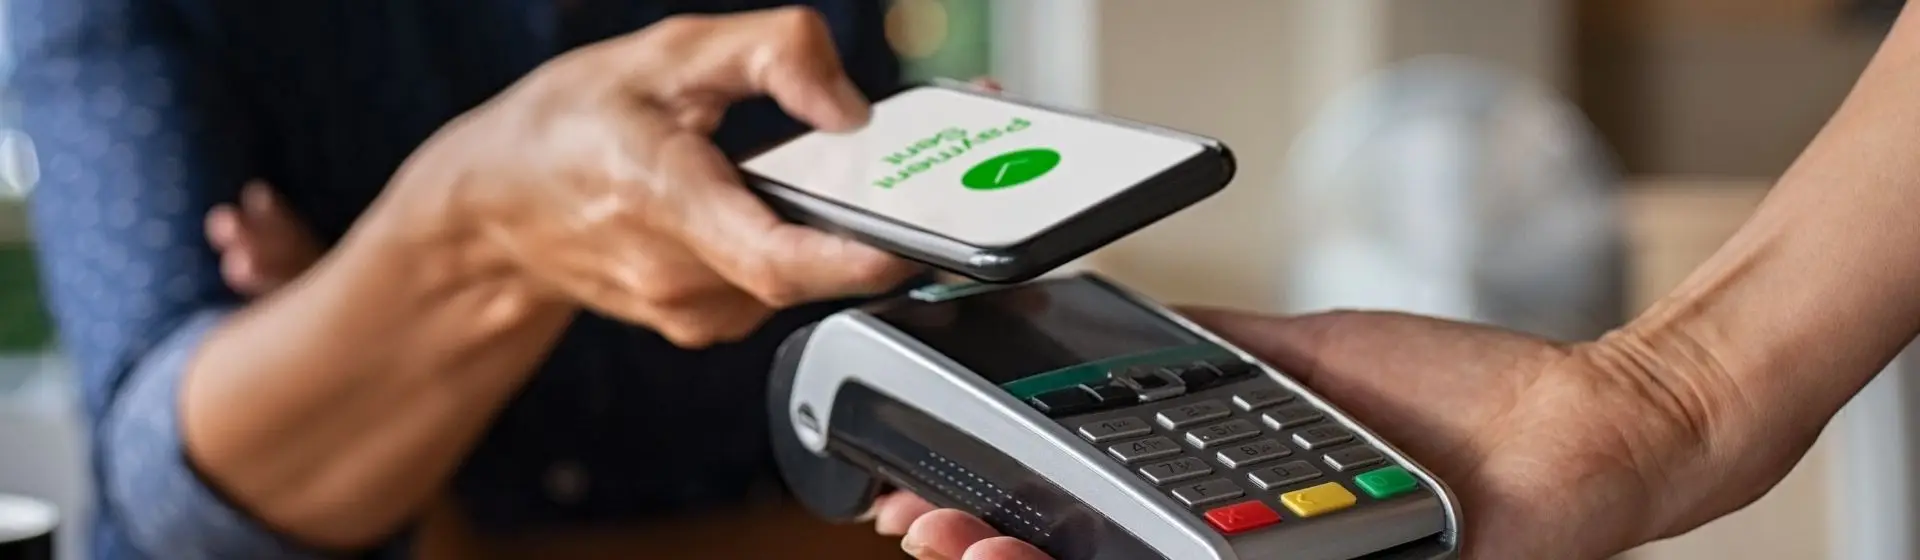 Homem faz pagamento em máquina usando tecnologia NFC no celular